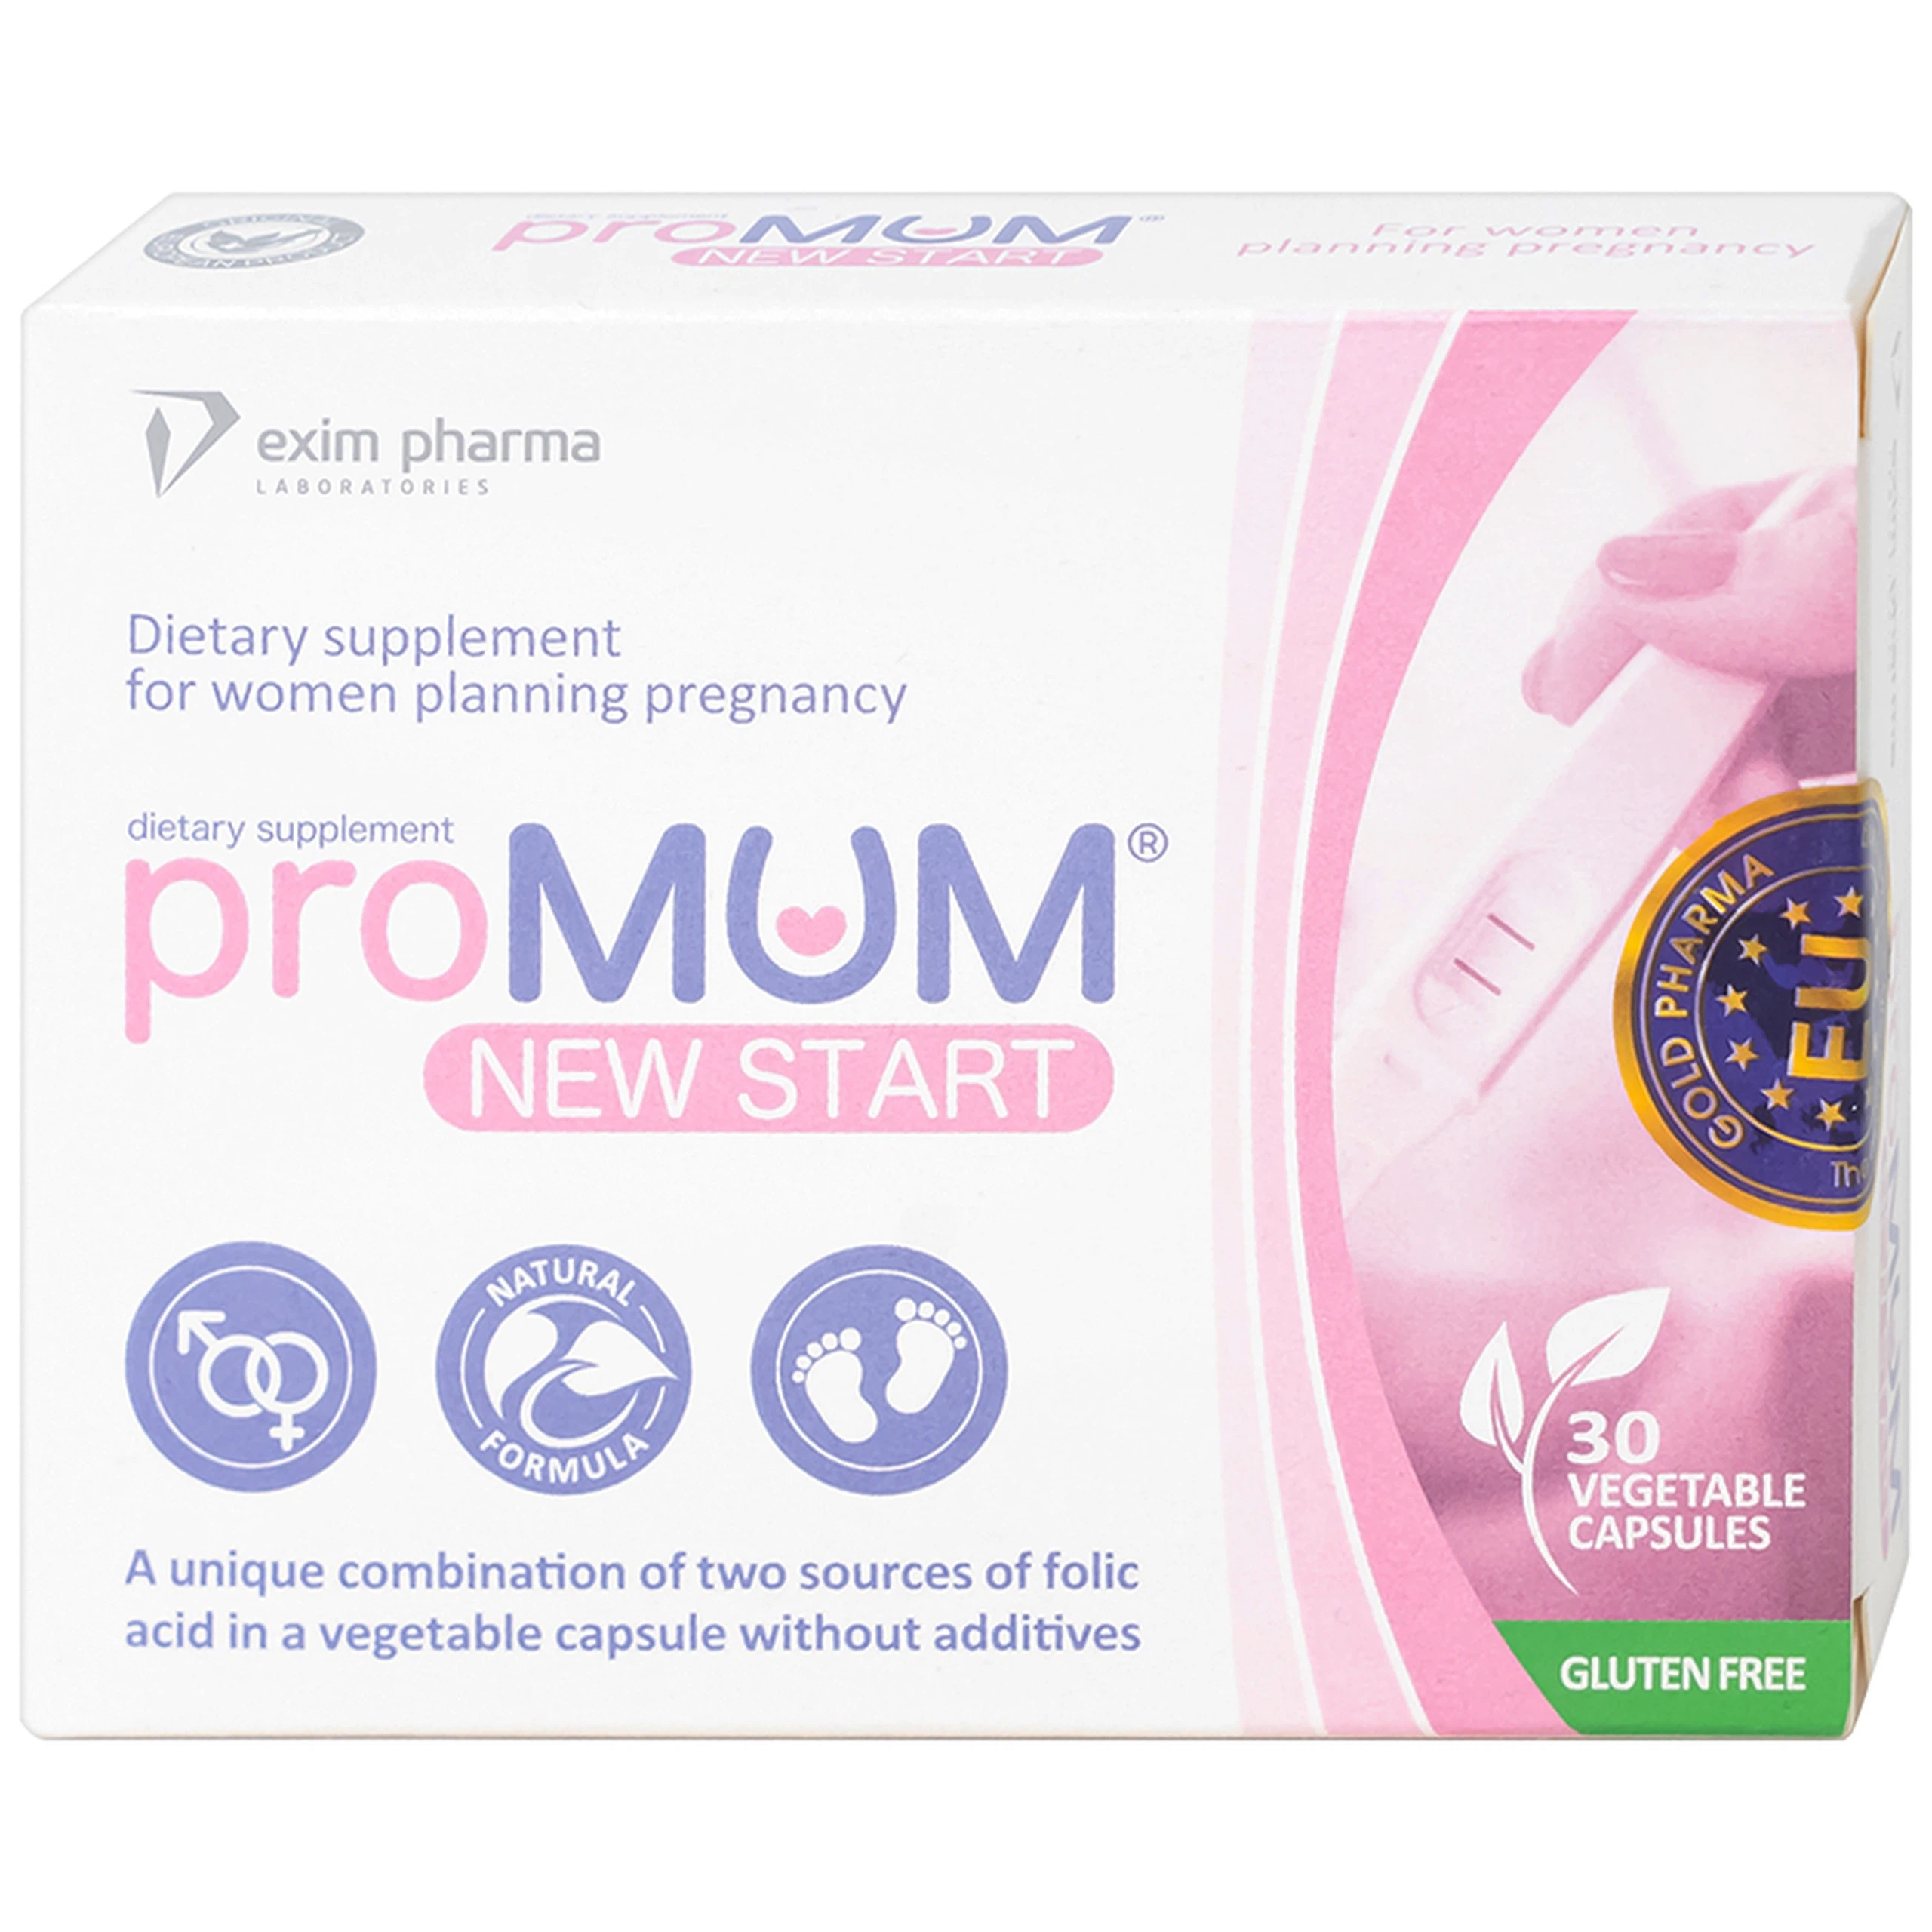 Viên uống proMUM New Start bổ sung vitamin và khoáng chất cho phụ nữ có kế hoạch mang thai (2 vỉ x 15 viên)